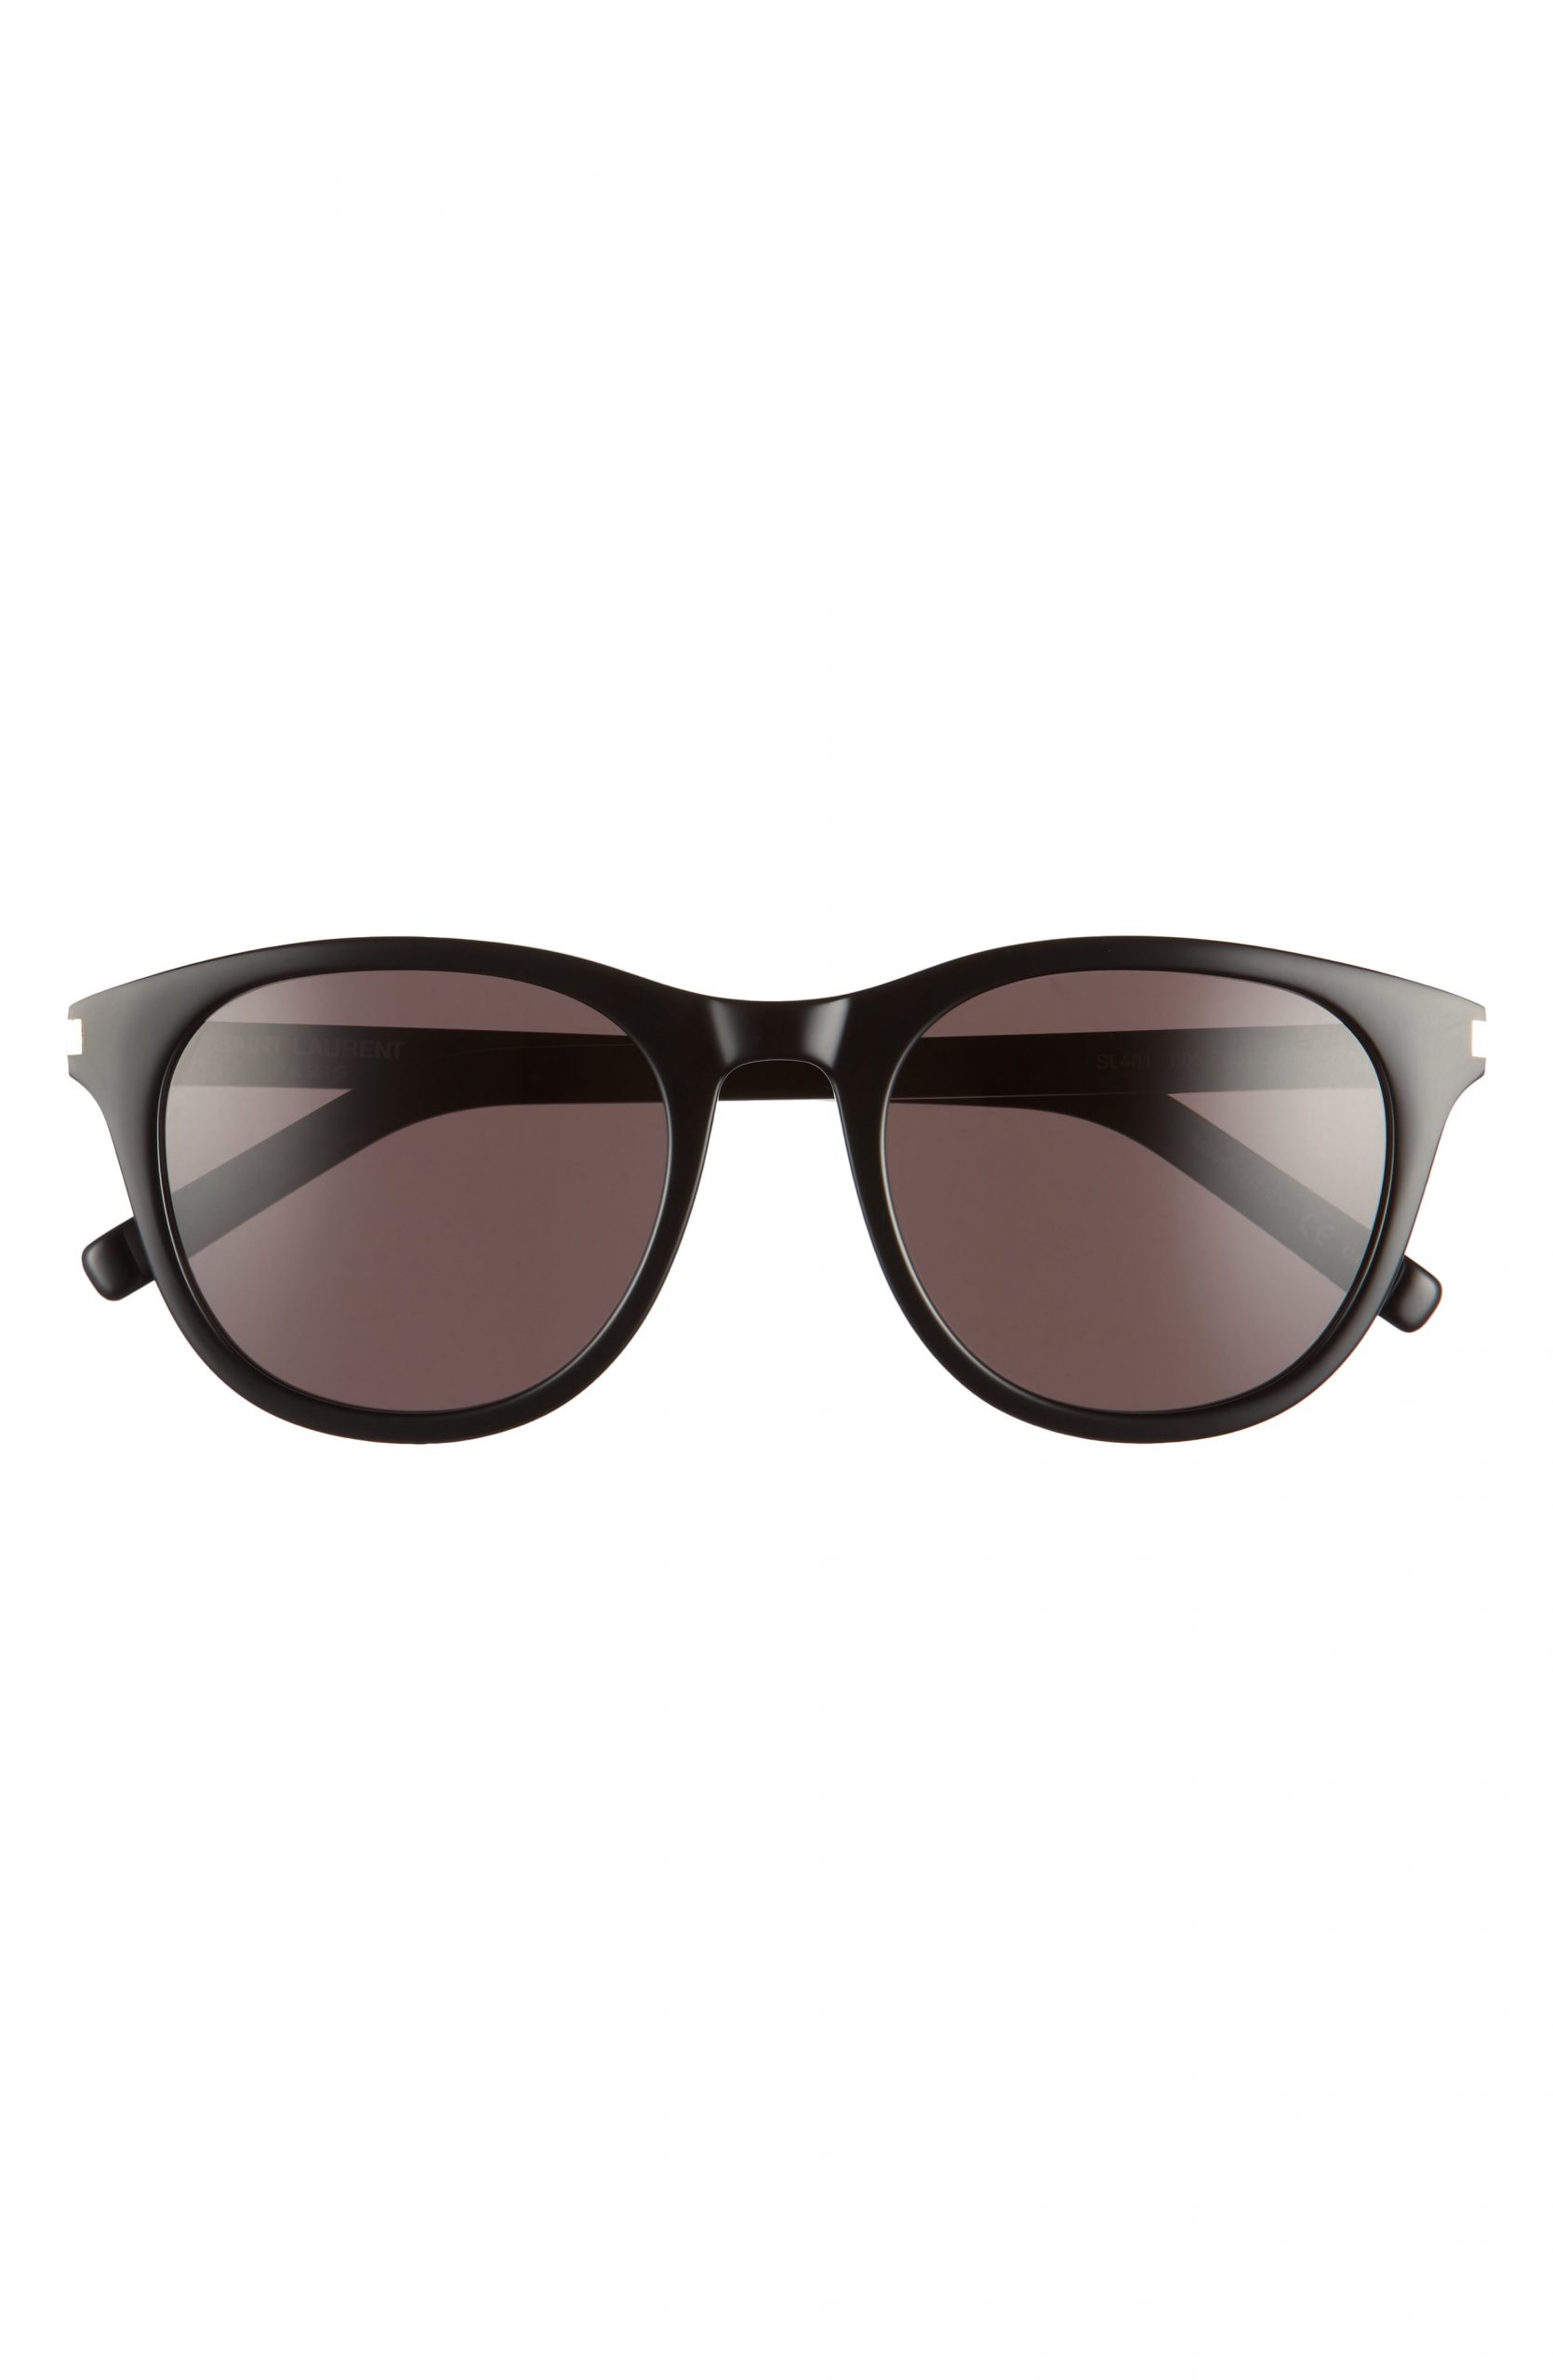 Men’s Saint Laurent 53mm Sunglasses - | The Fashionisto